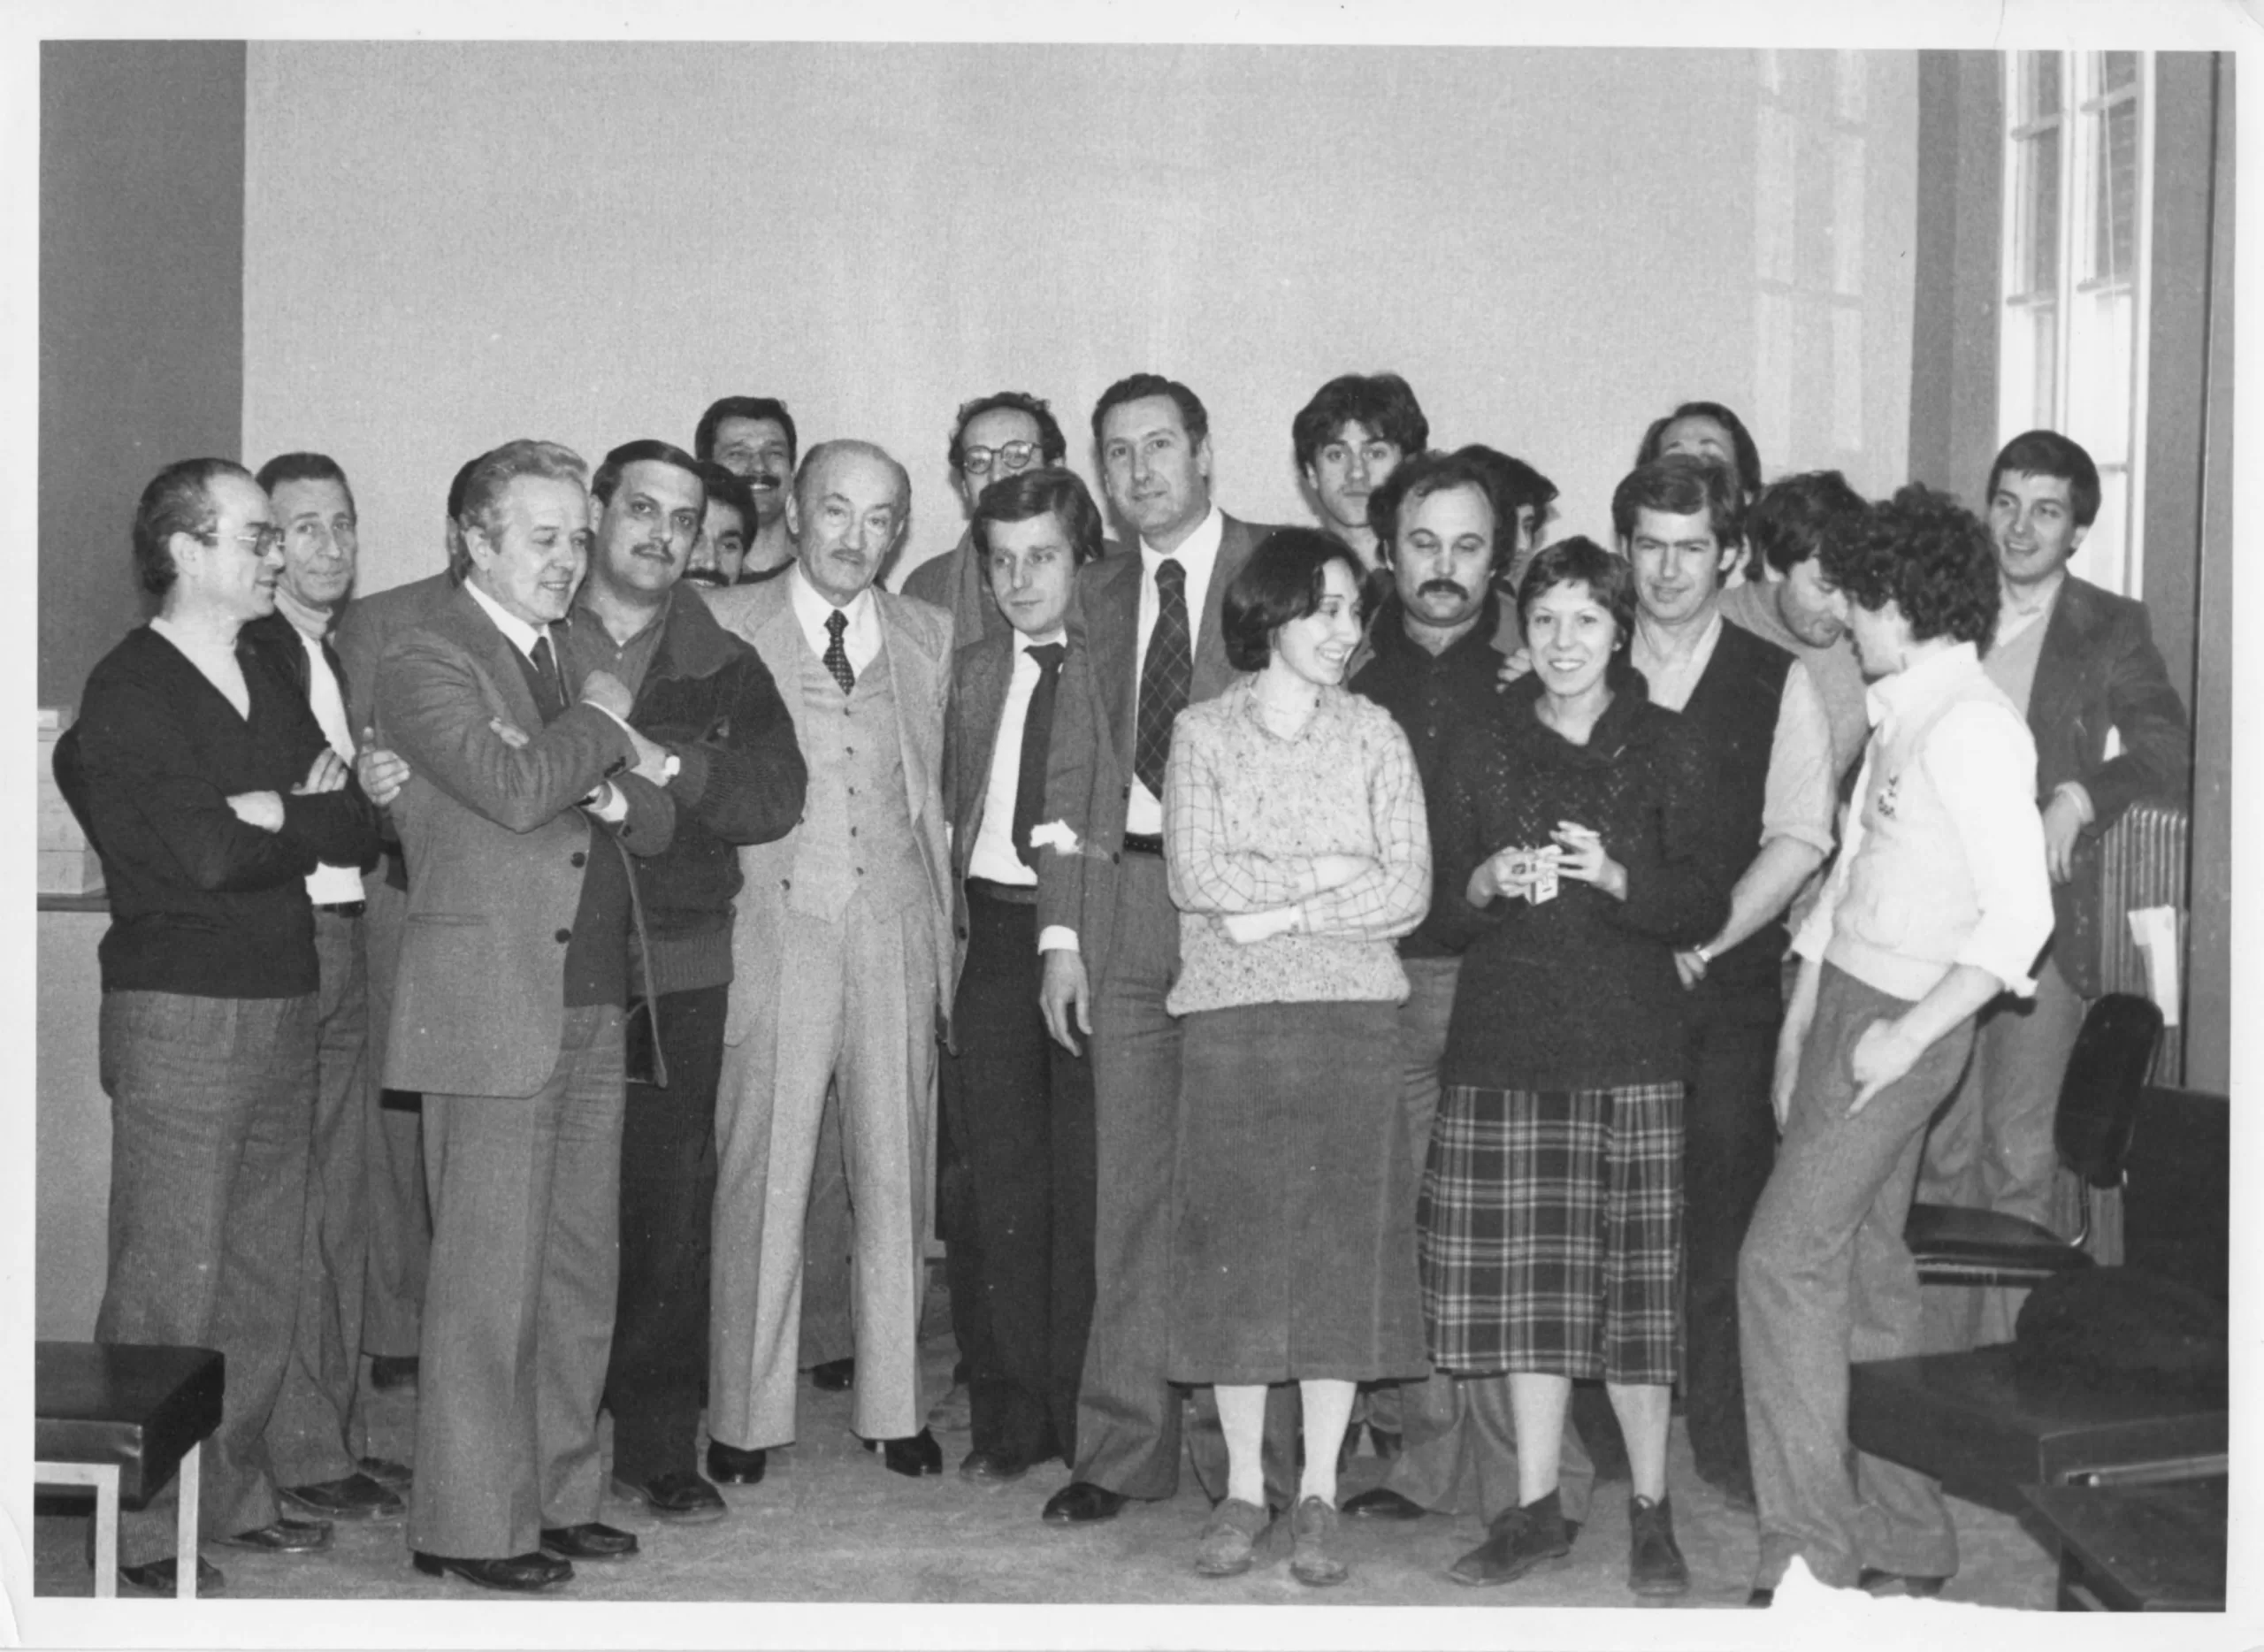 1979, 7 marzo. Rimini, Sede Federazione PCI. I compagni della Federazione festeggiano i 70 anni di Vito Nicoletti